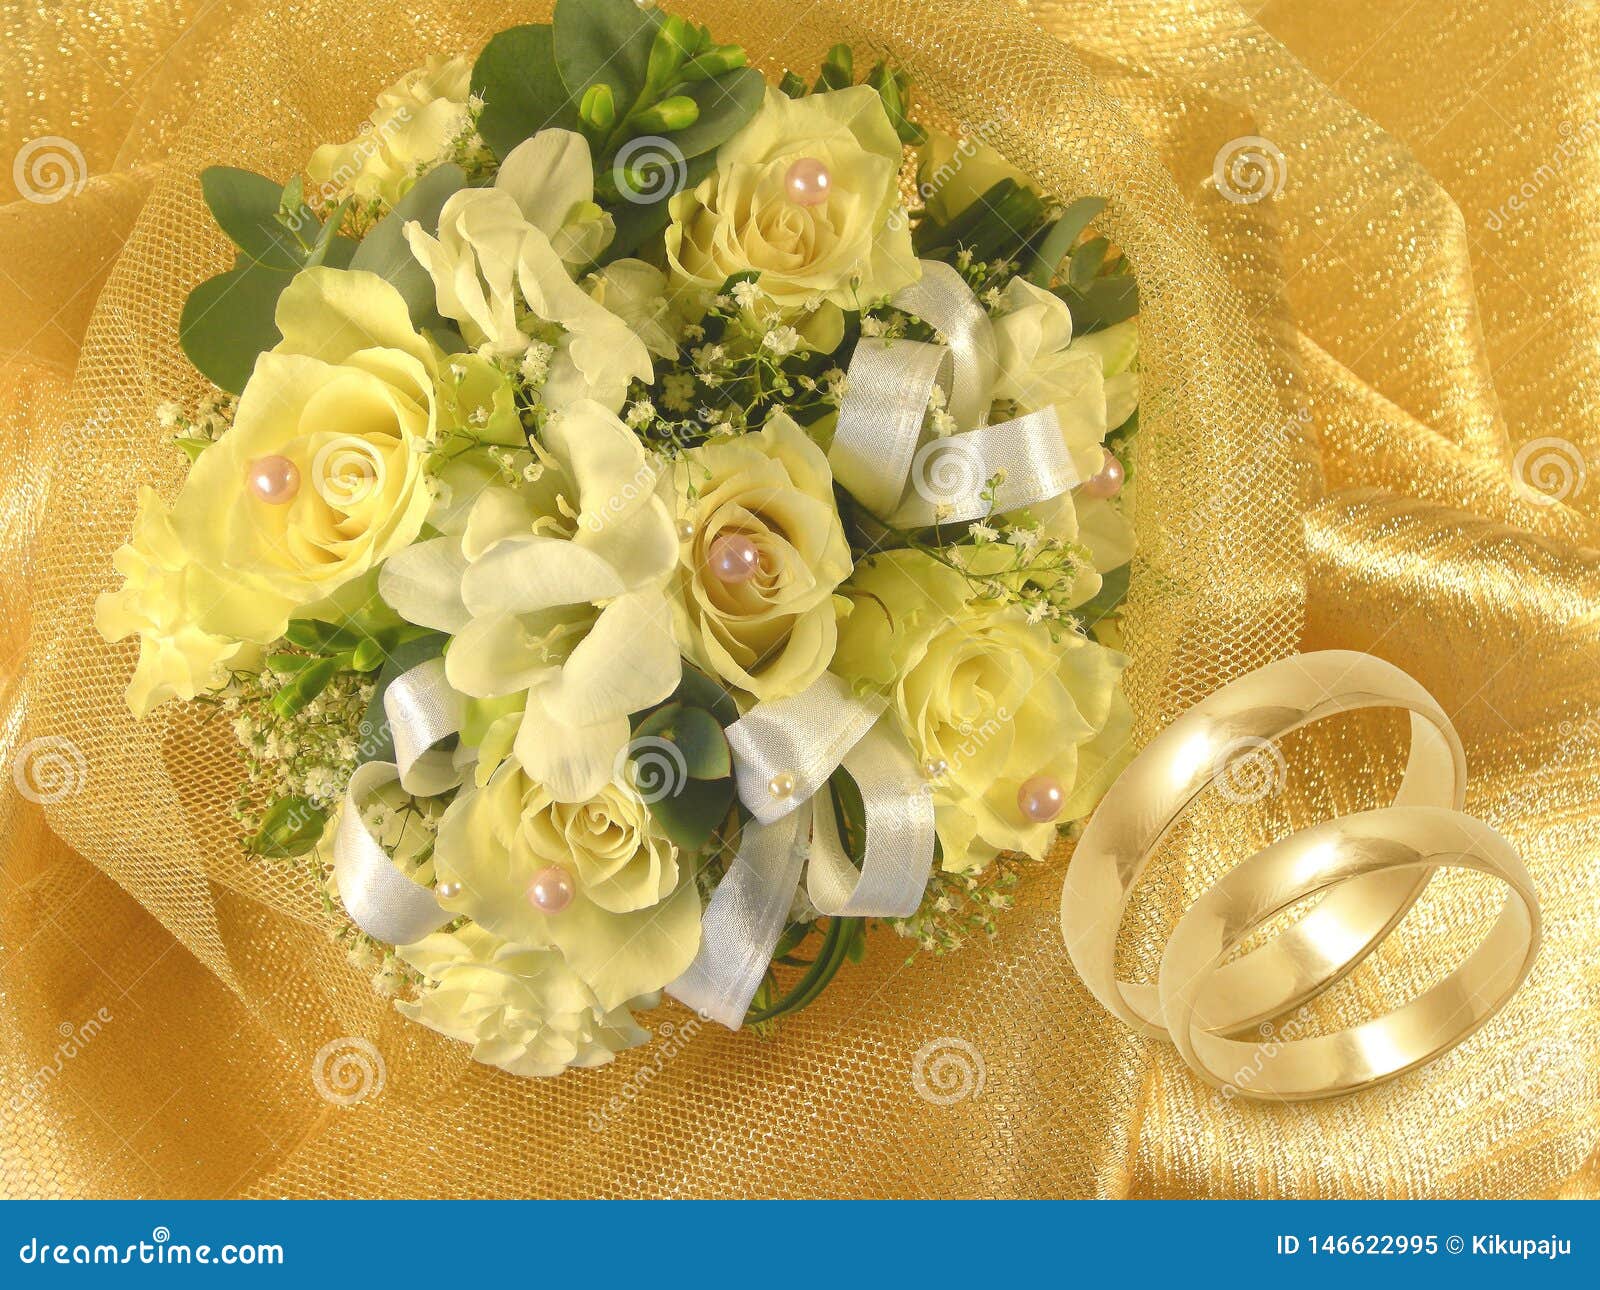 Sự kết hợp tuyệt vời giữa hoa cưới và nhẫn vàng sẽ đưa bạn vào một thế giới cưới hỏi mộng mơ. Hãy xem hình ảnh để cảm nhận được sự sang trọng, tinh tế và đẹp đẽ của chúng.